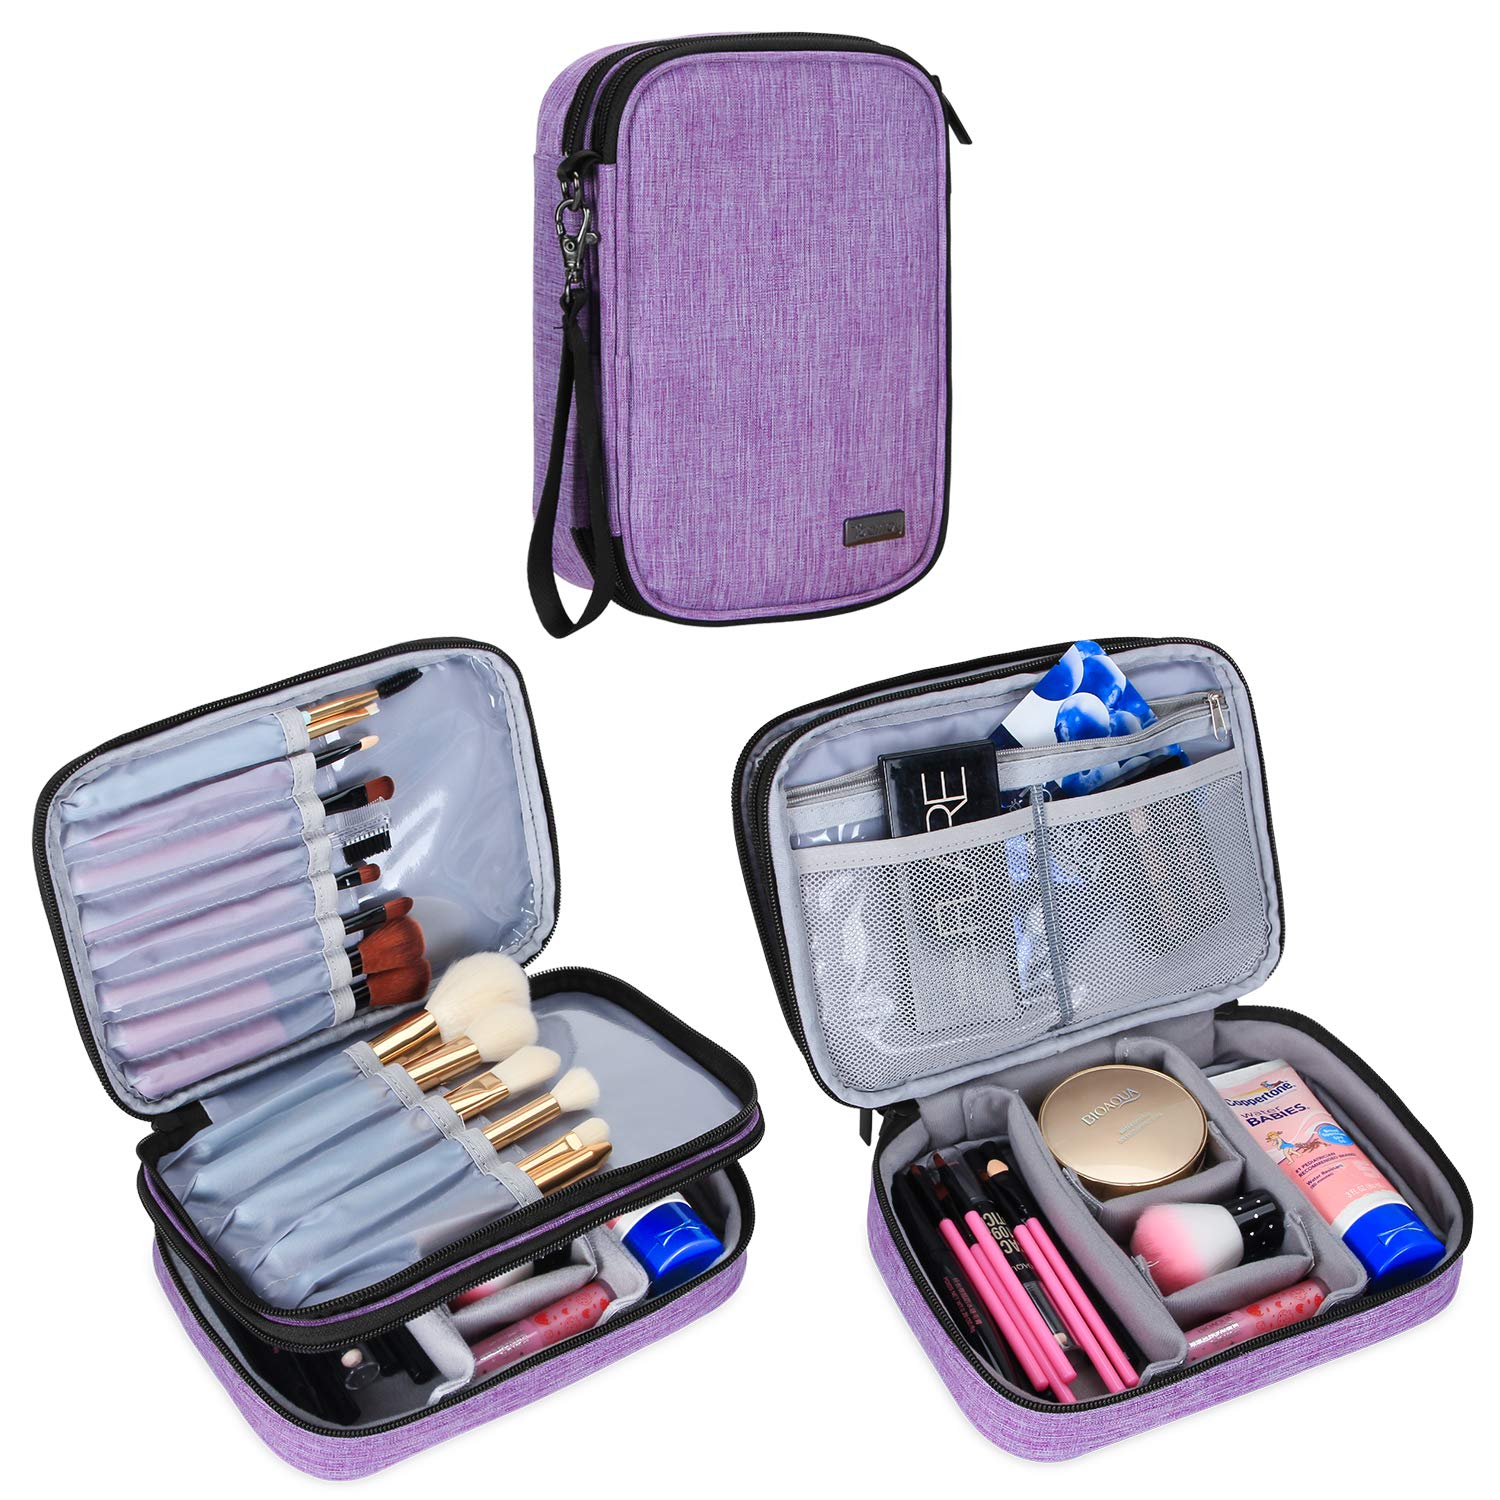 Podróżne etui na pędzle do makijażu (do 8,8 cala), profesjonalna torba z organizerem na kosmetyki z paskiem na uchwyt na niezbędne kosmetyki - średnie i pędzle do makijażu, fioletowa (bez akcesoriów w zestawie)